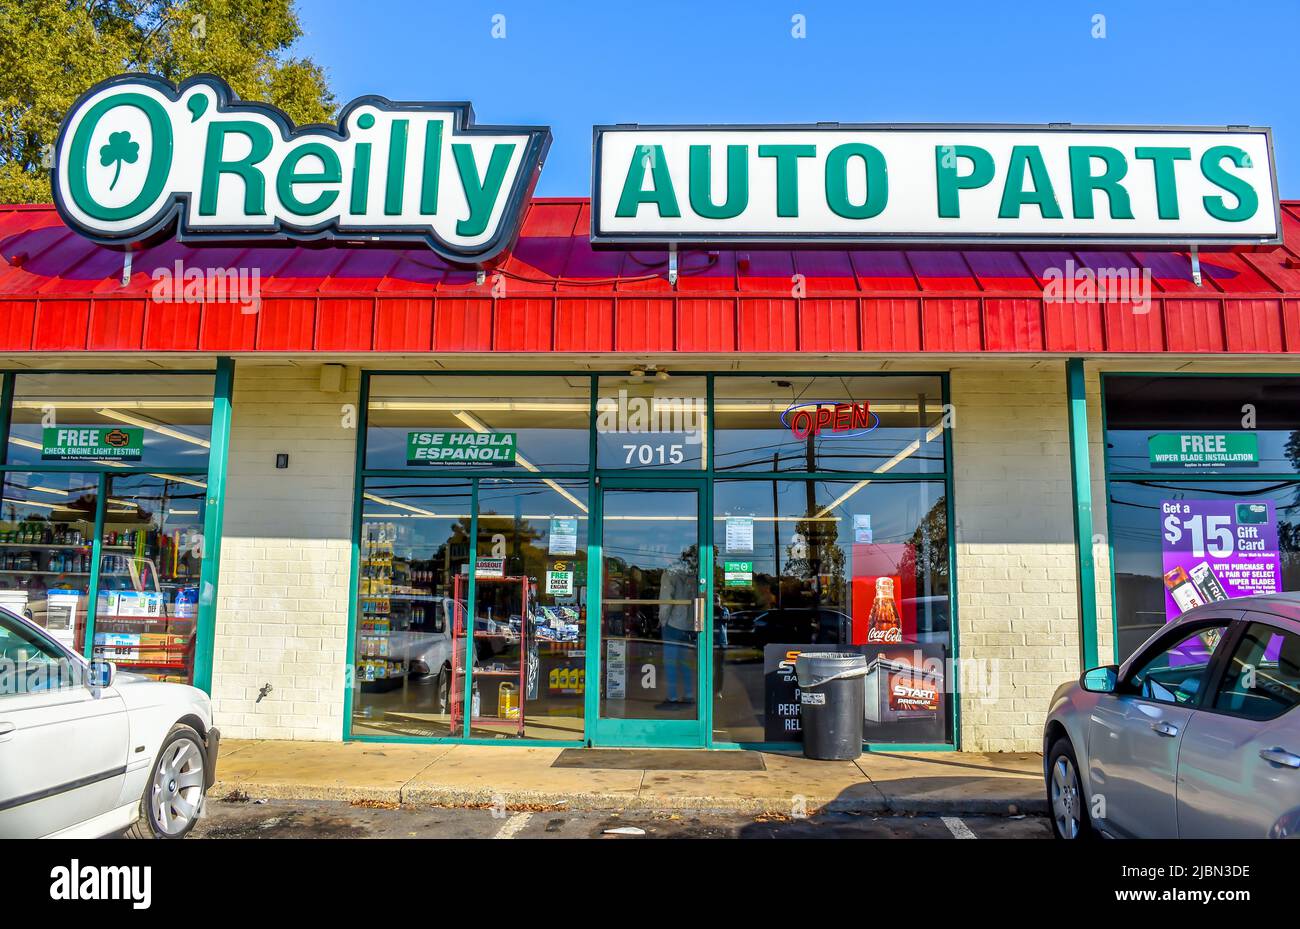 Die Außenfassade des O'Reilly Auto Parts Stores sowie die Logos in Grün und Weiß auf einem roten, gerippten Dach über einer Schaufensterfront aus Glas. Stockfoto